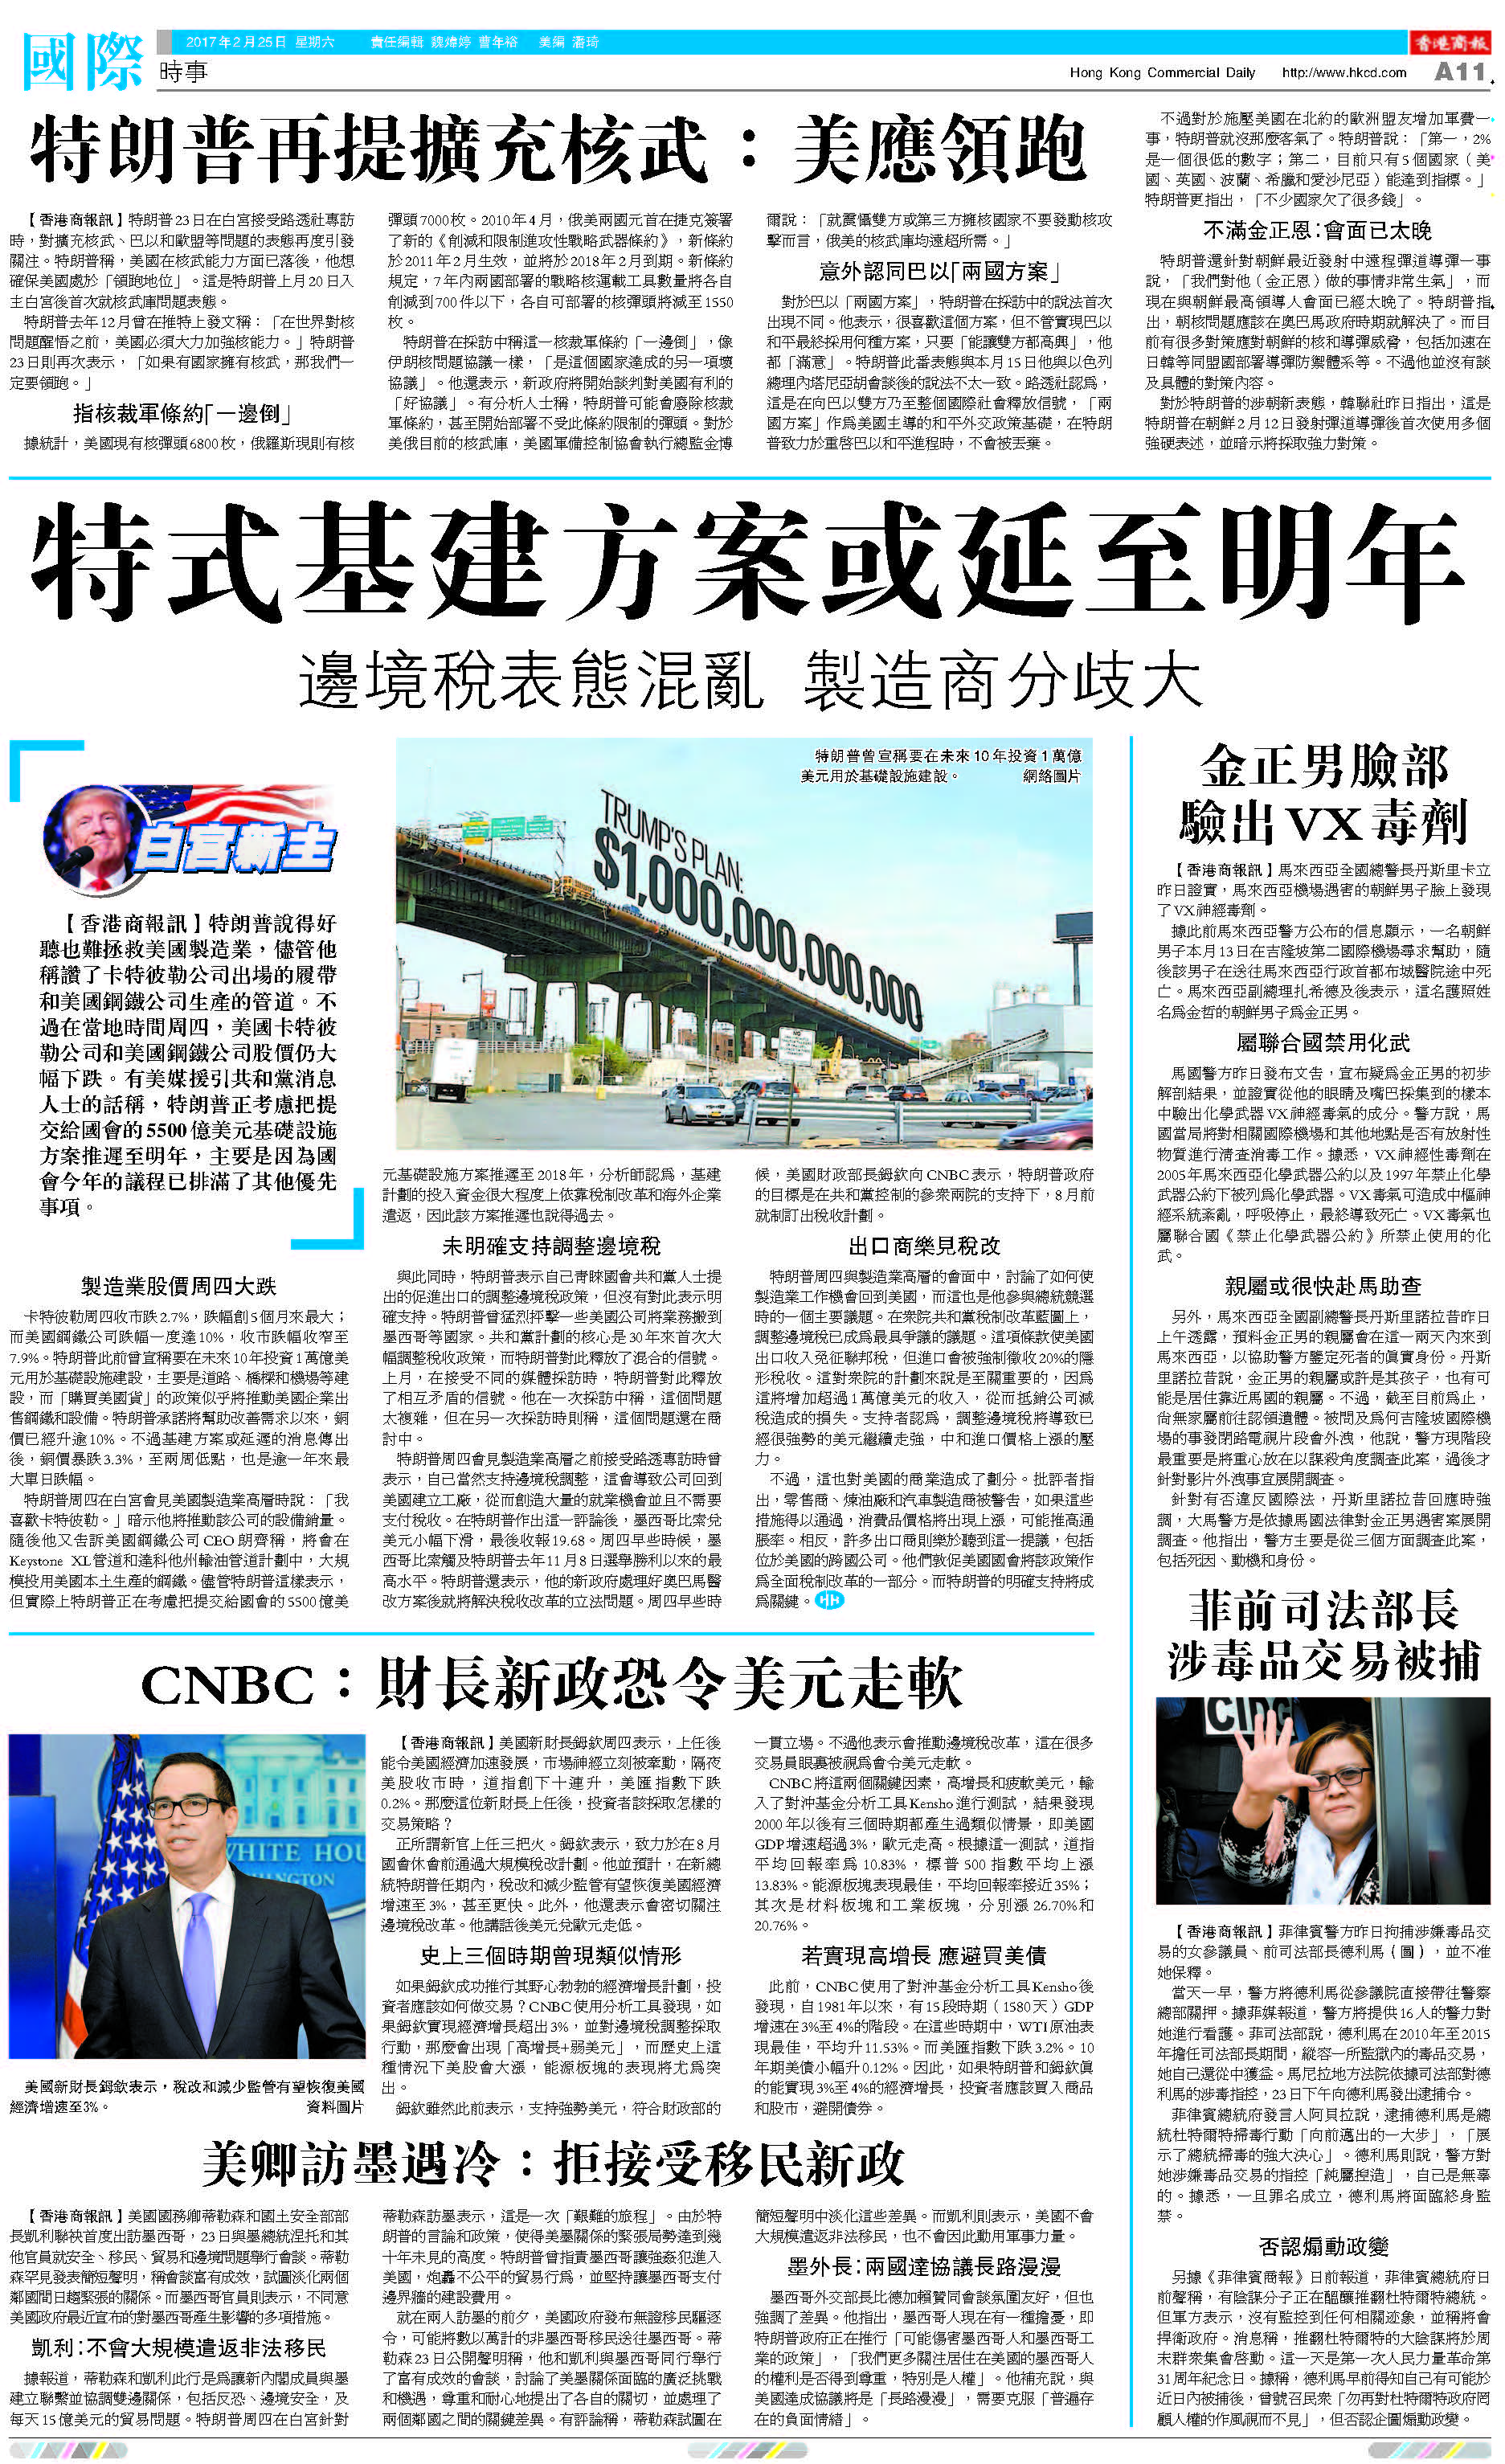 2月25日香港商報A11版